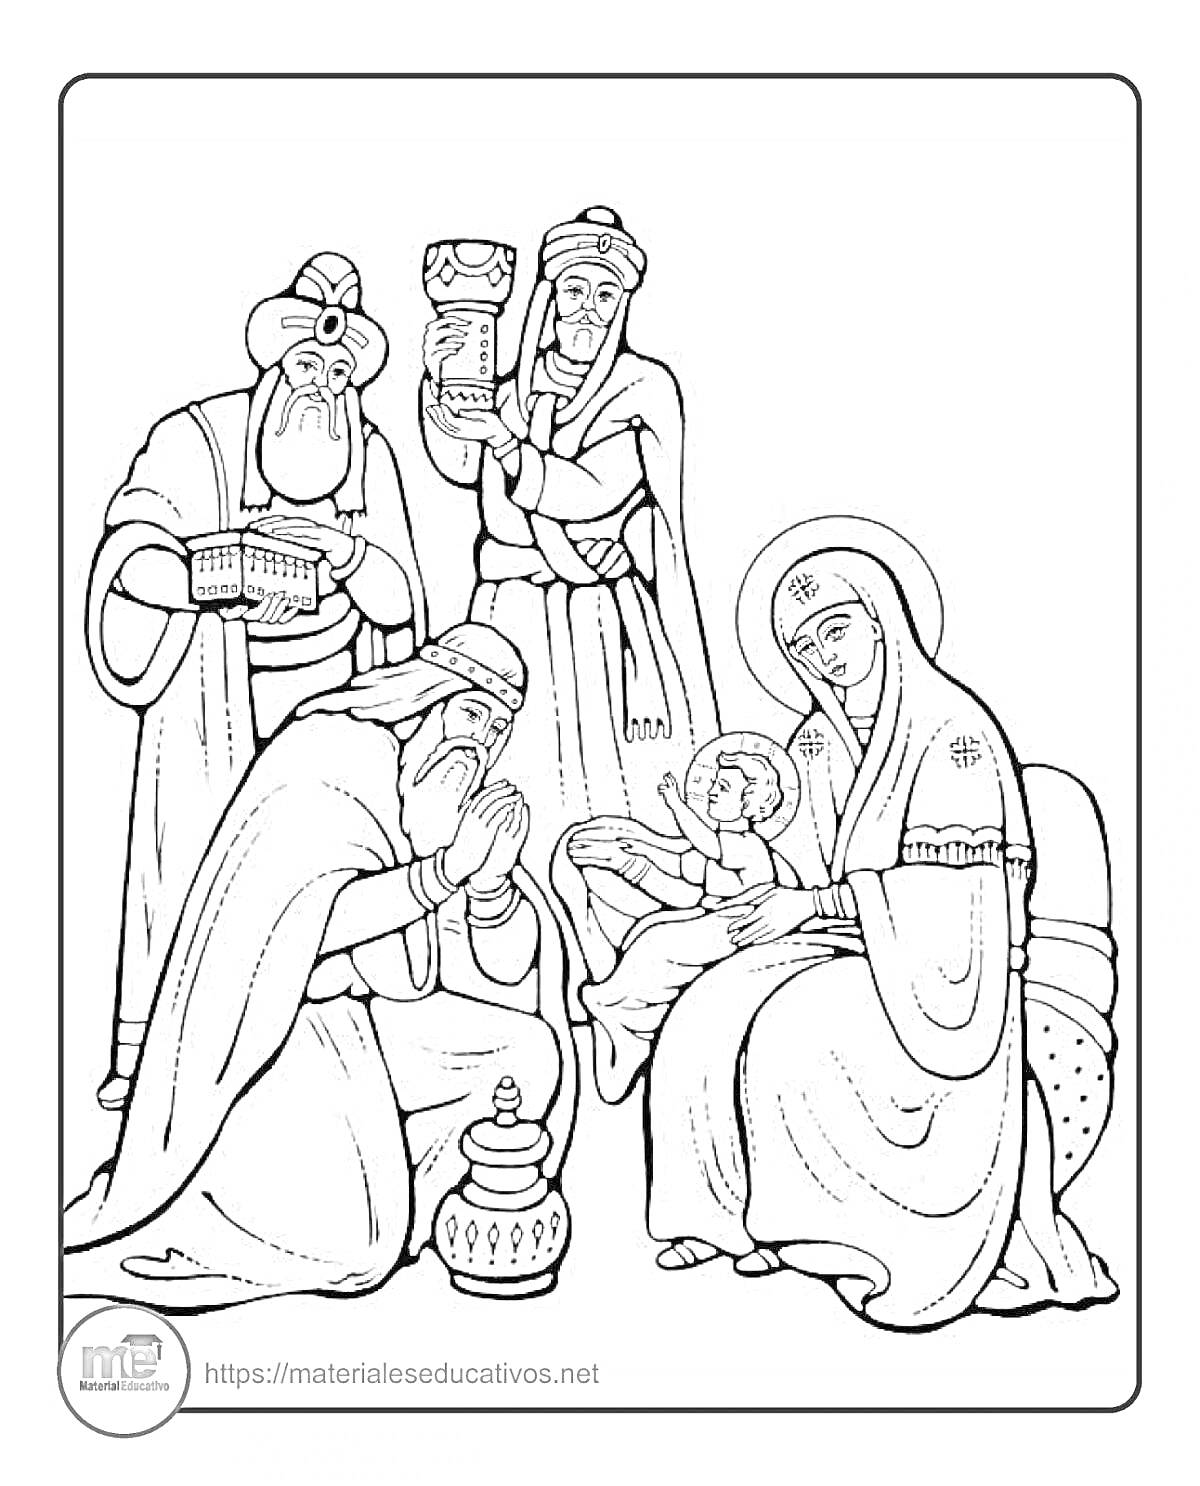 РаскраскаПоклонение волхвов: Мария с младенцем, три волхва с дарами